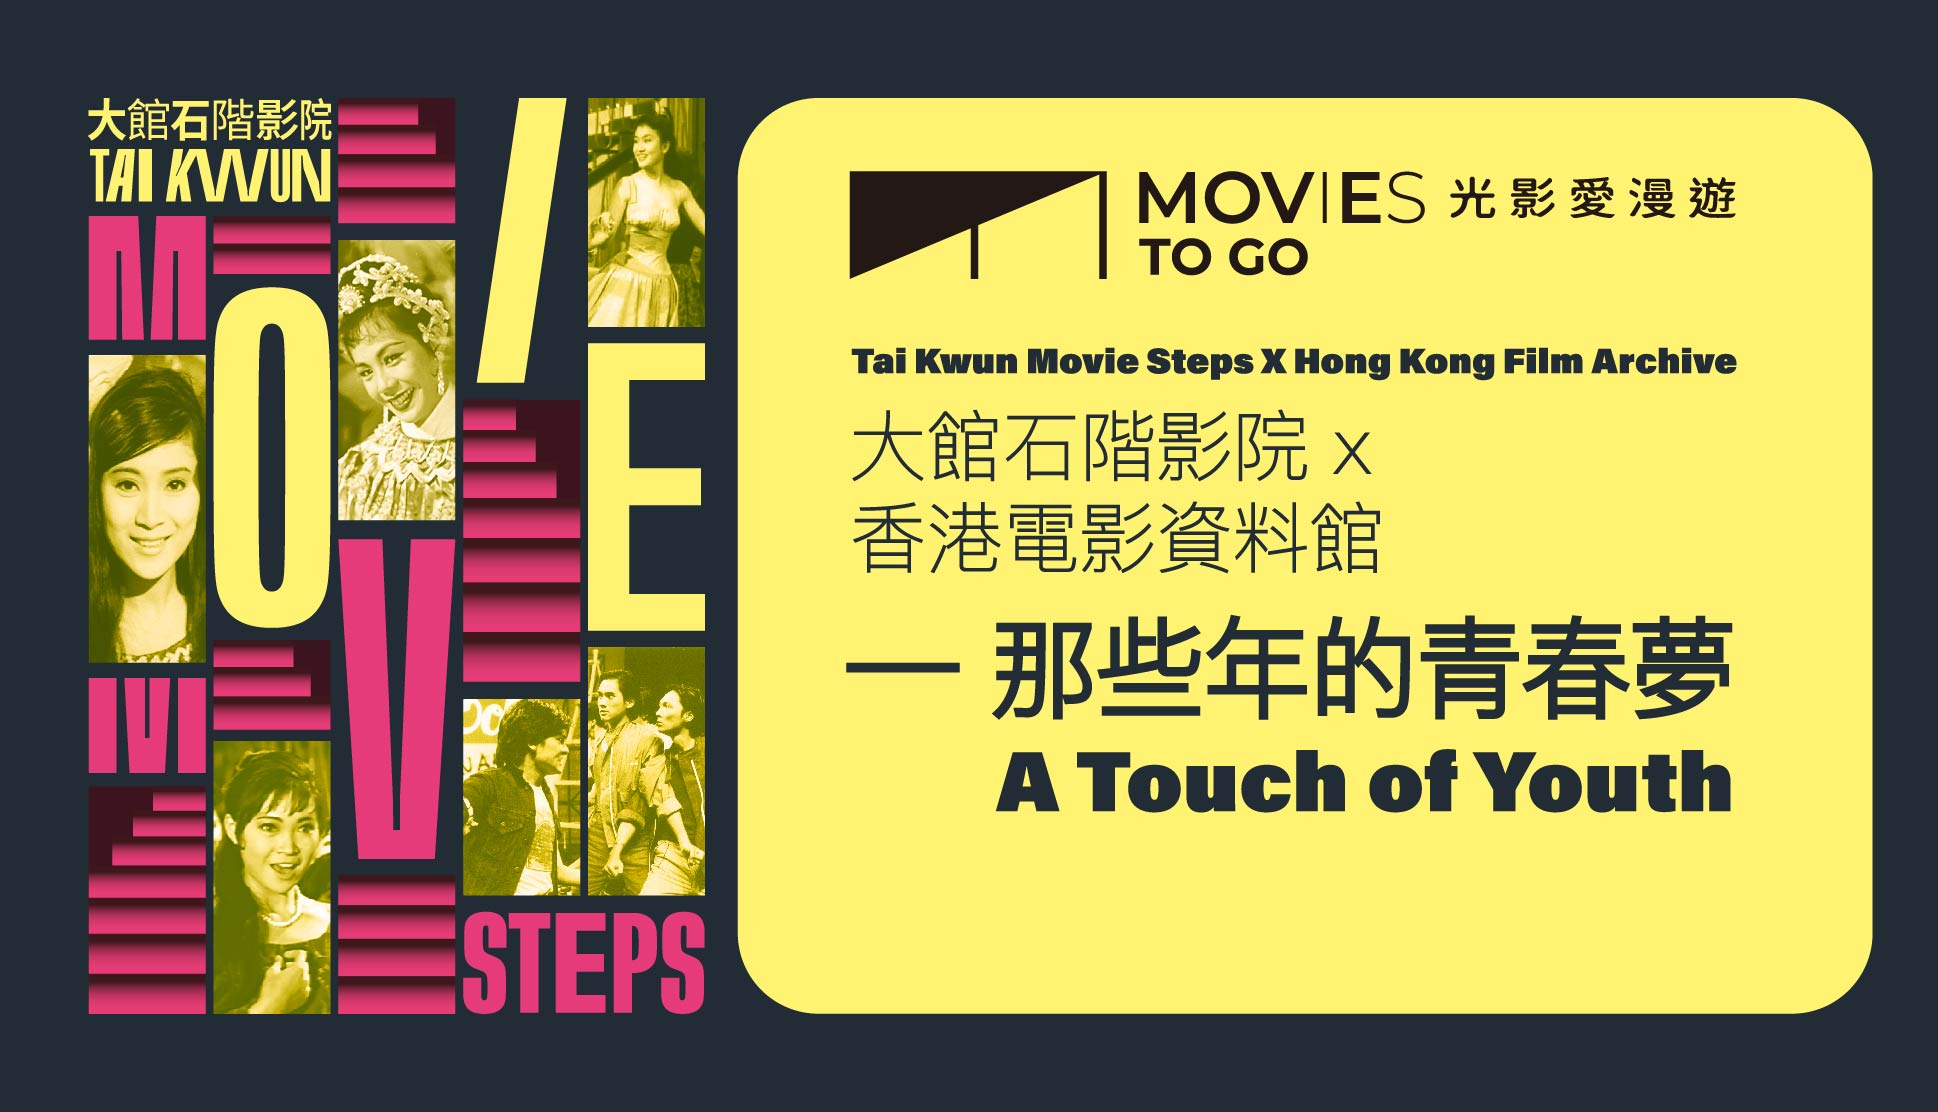 光影愛漫遊 - 大館石階影院 X 香港電影資料館——那些年的青春夢